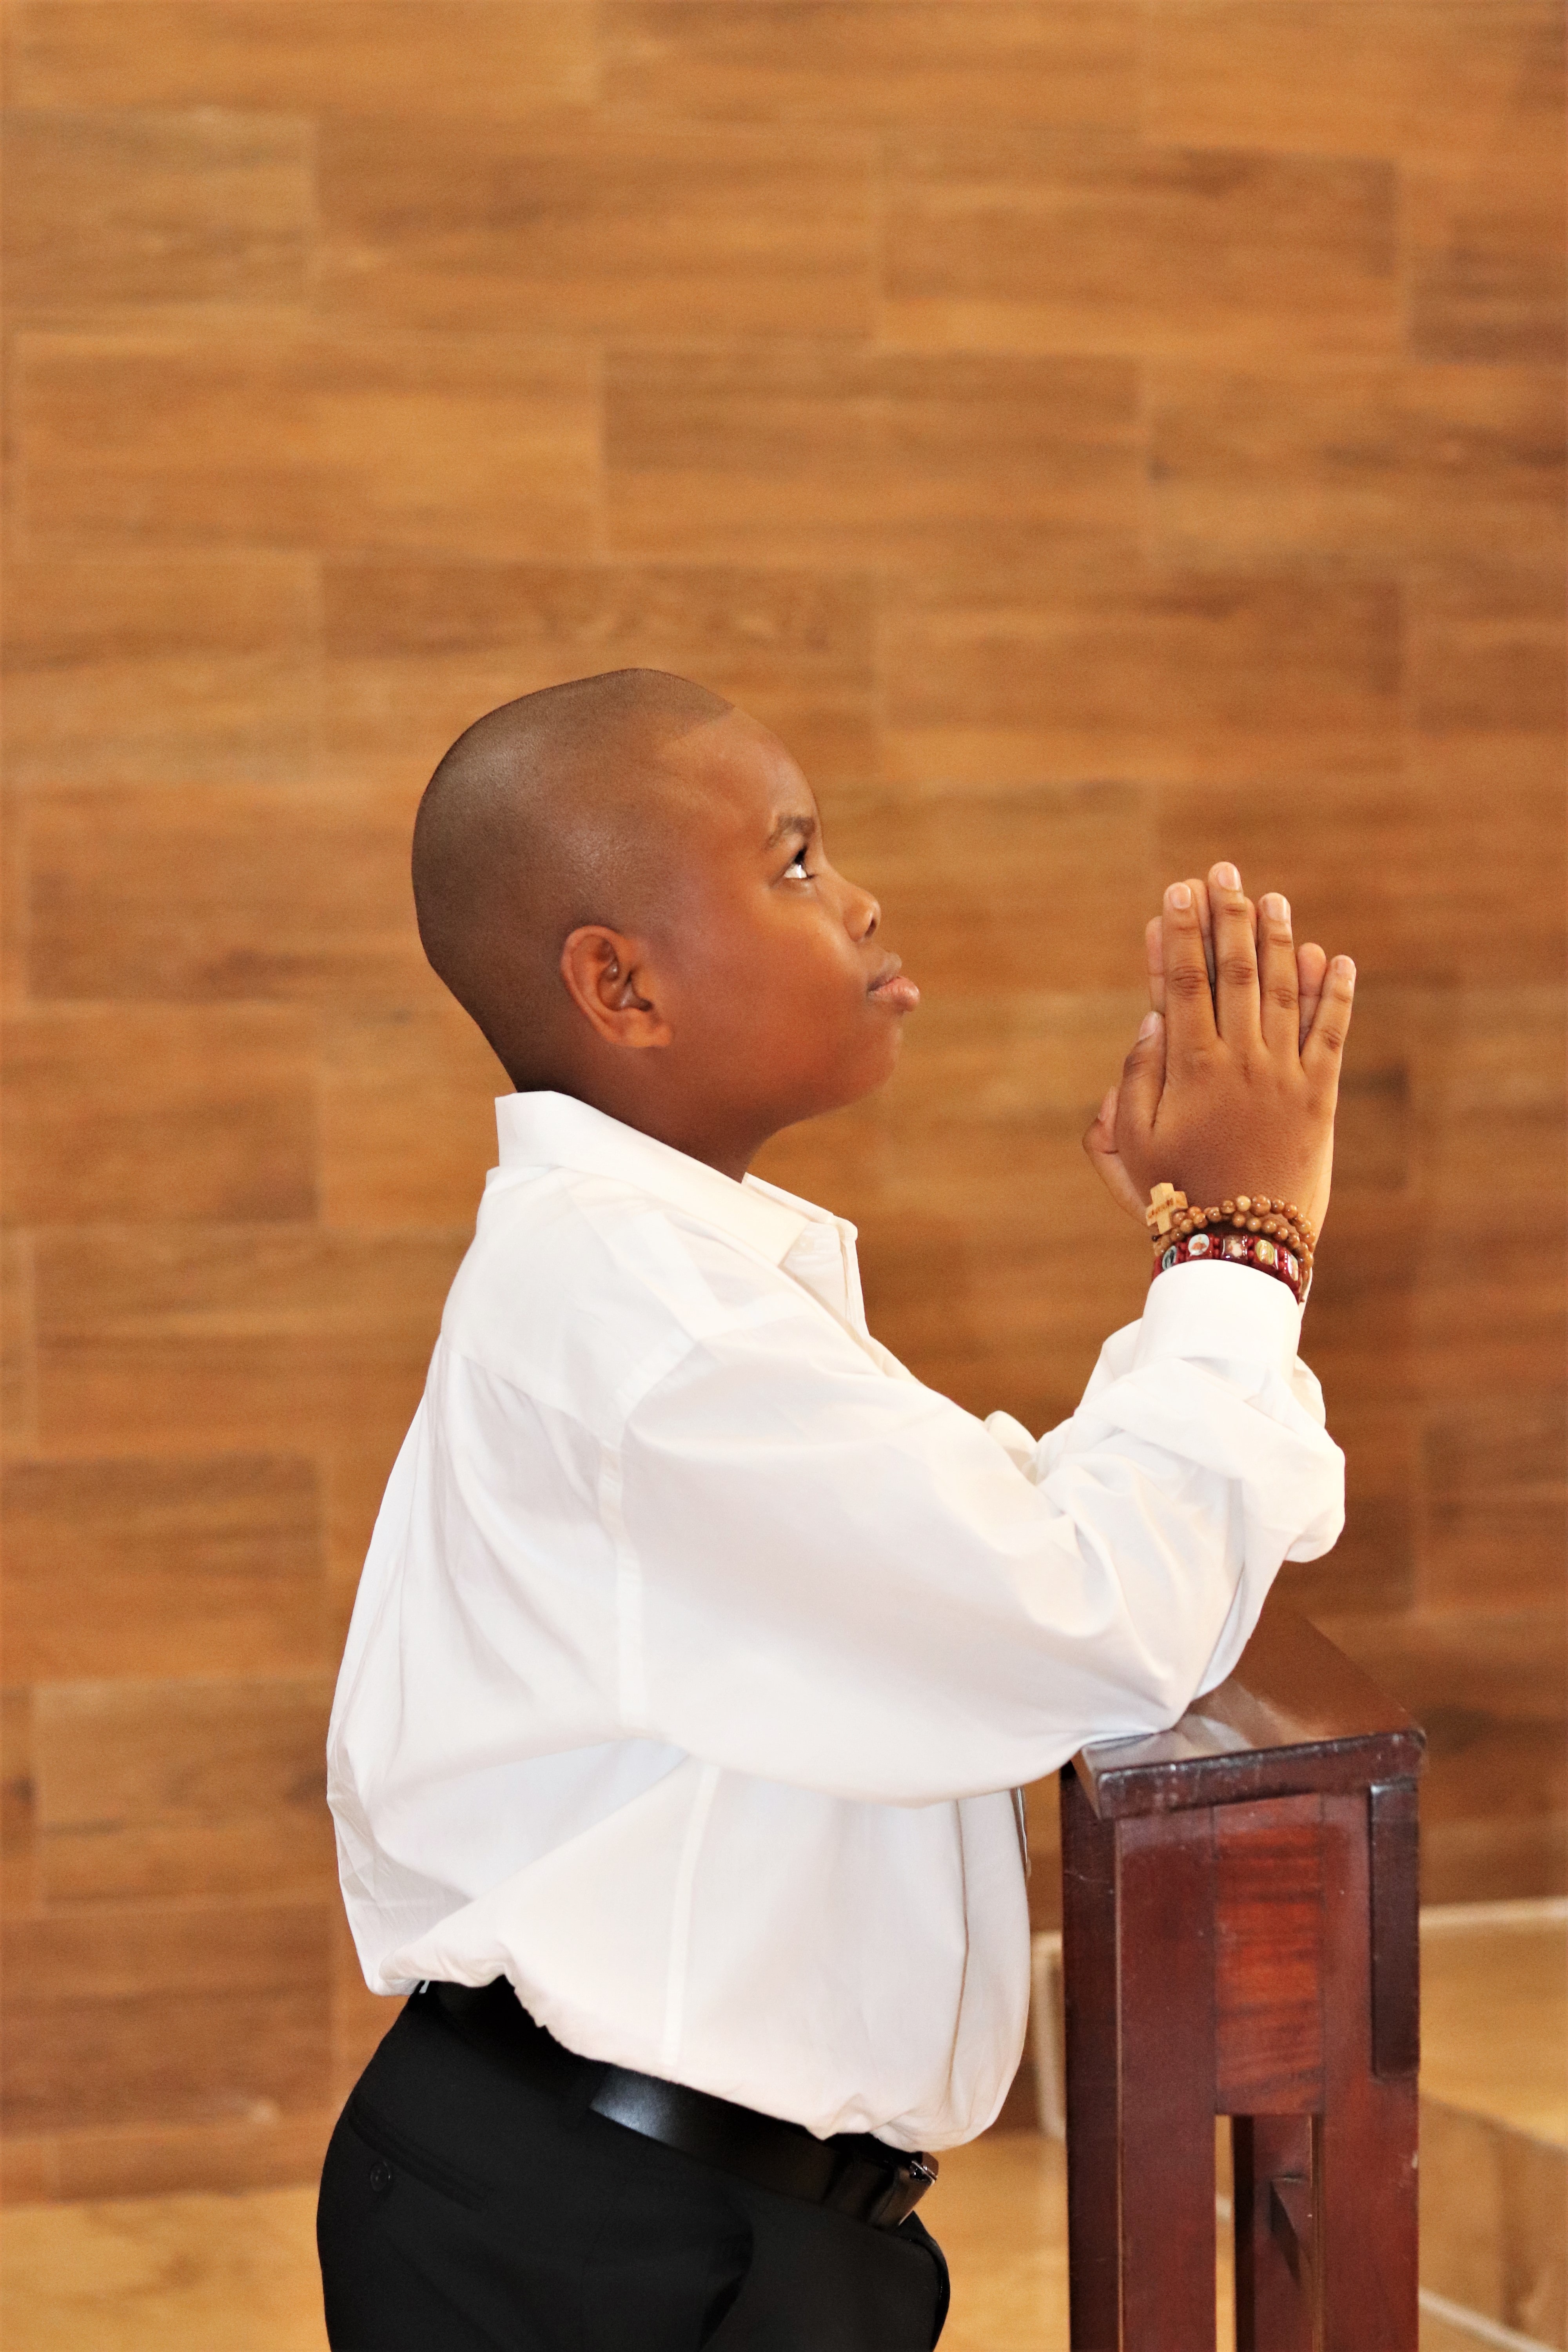 child praying pose